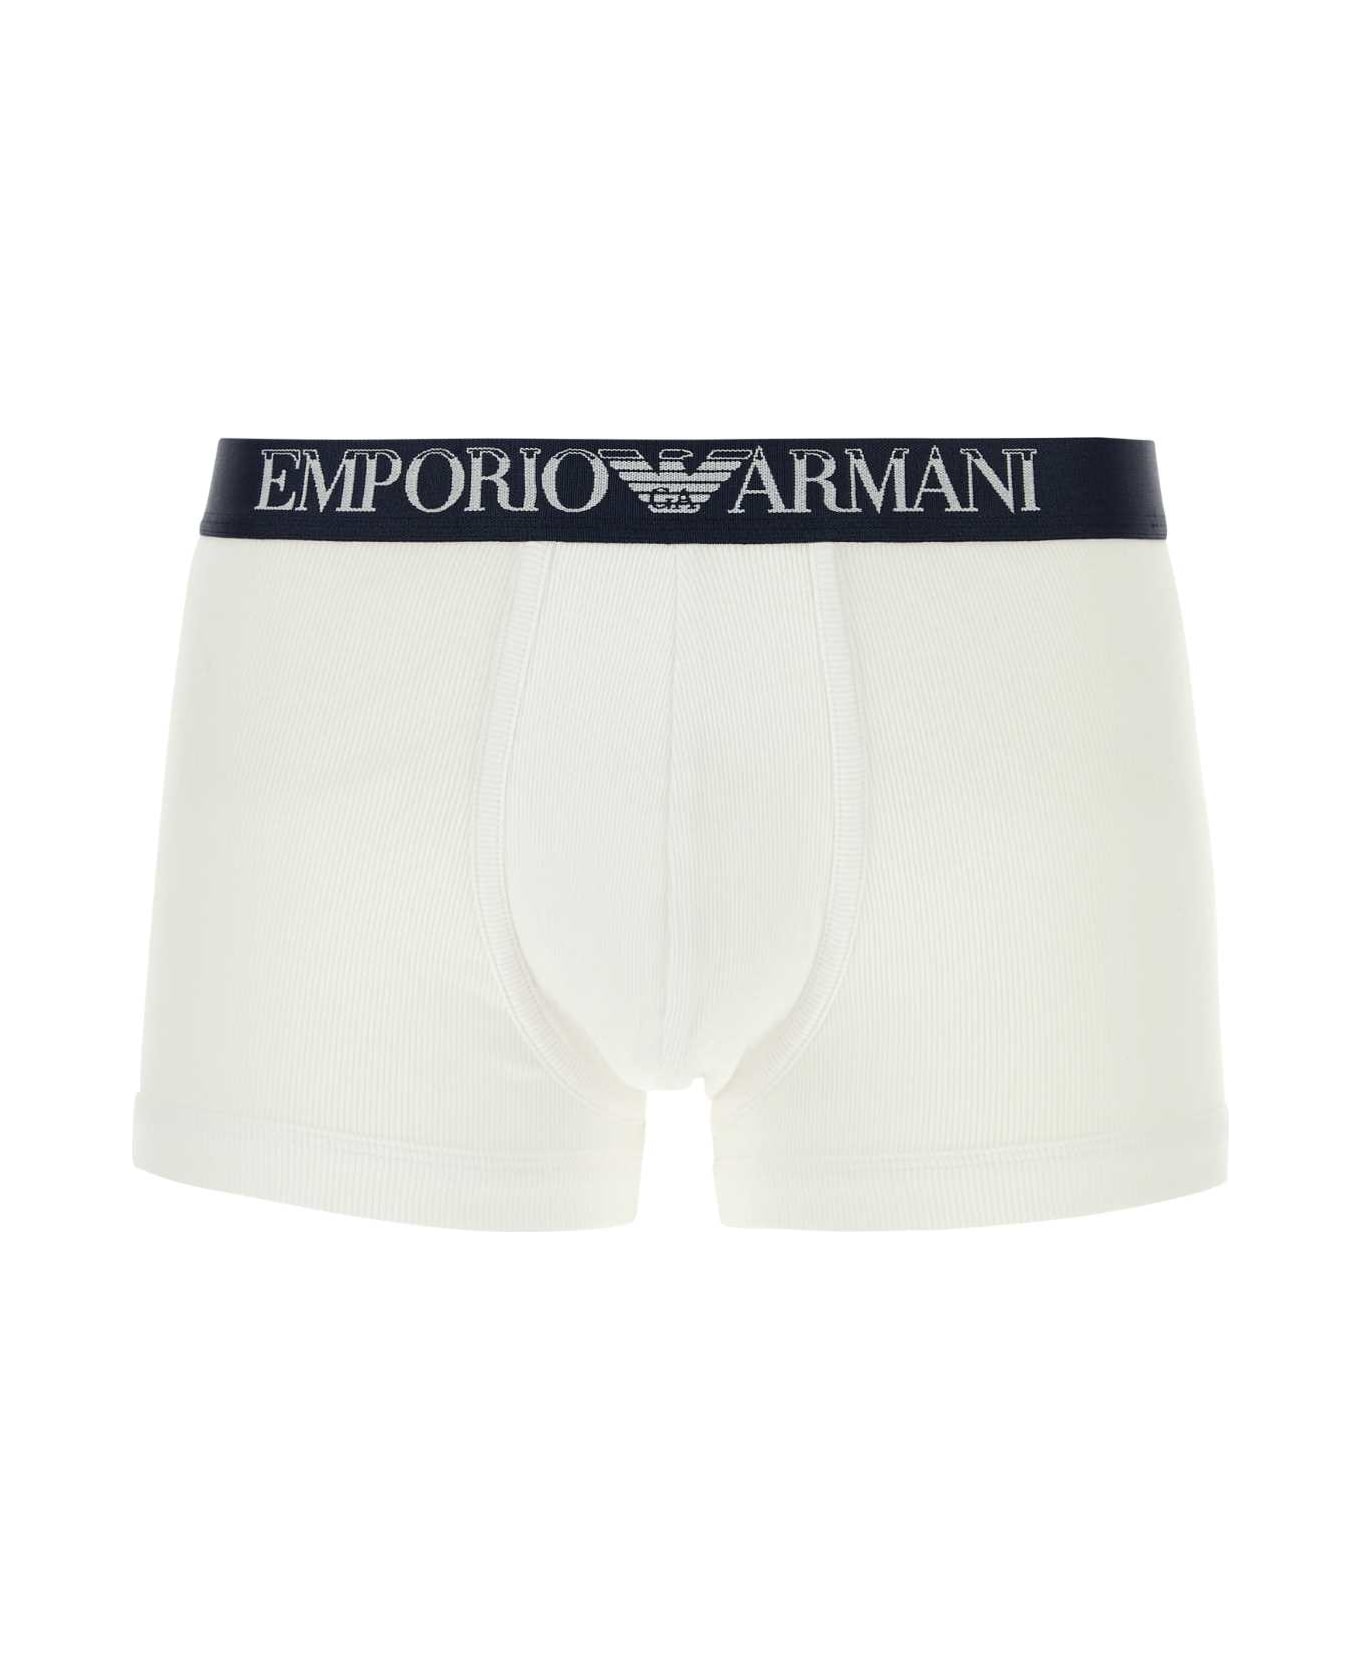 Emporio Armani Cotton Boxer Set - 17135